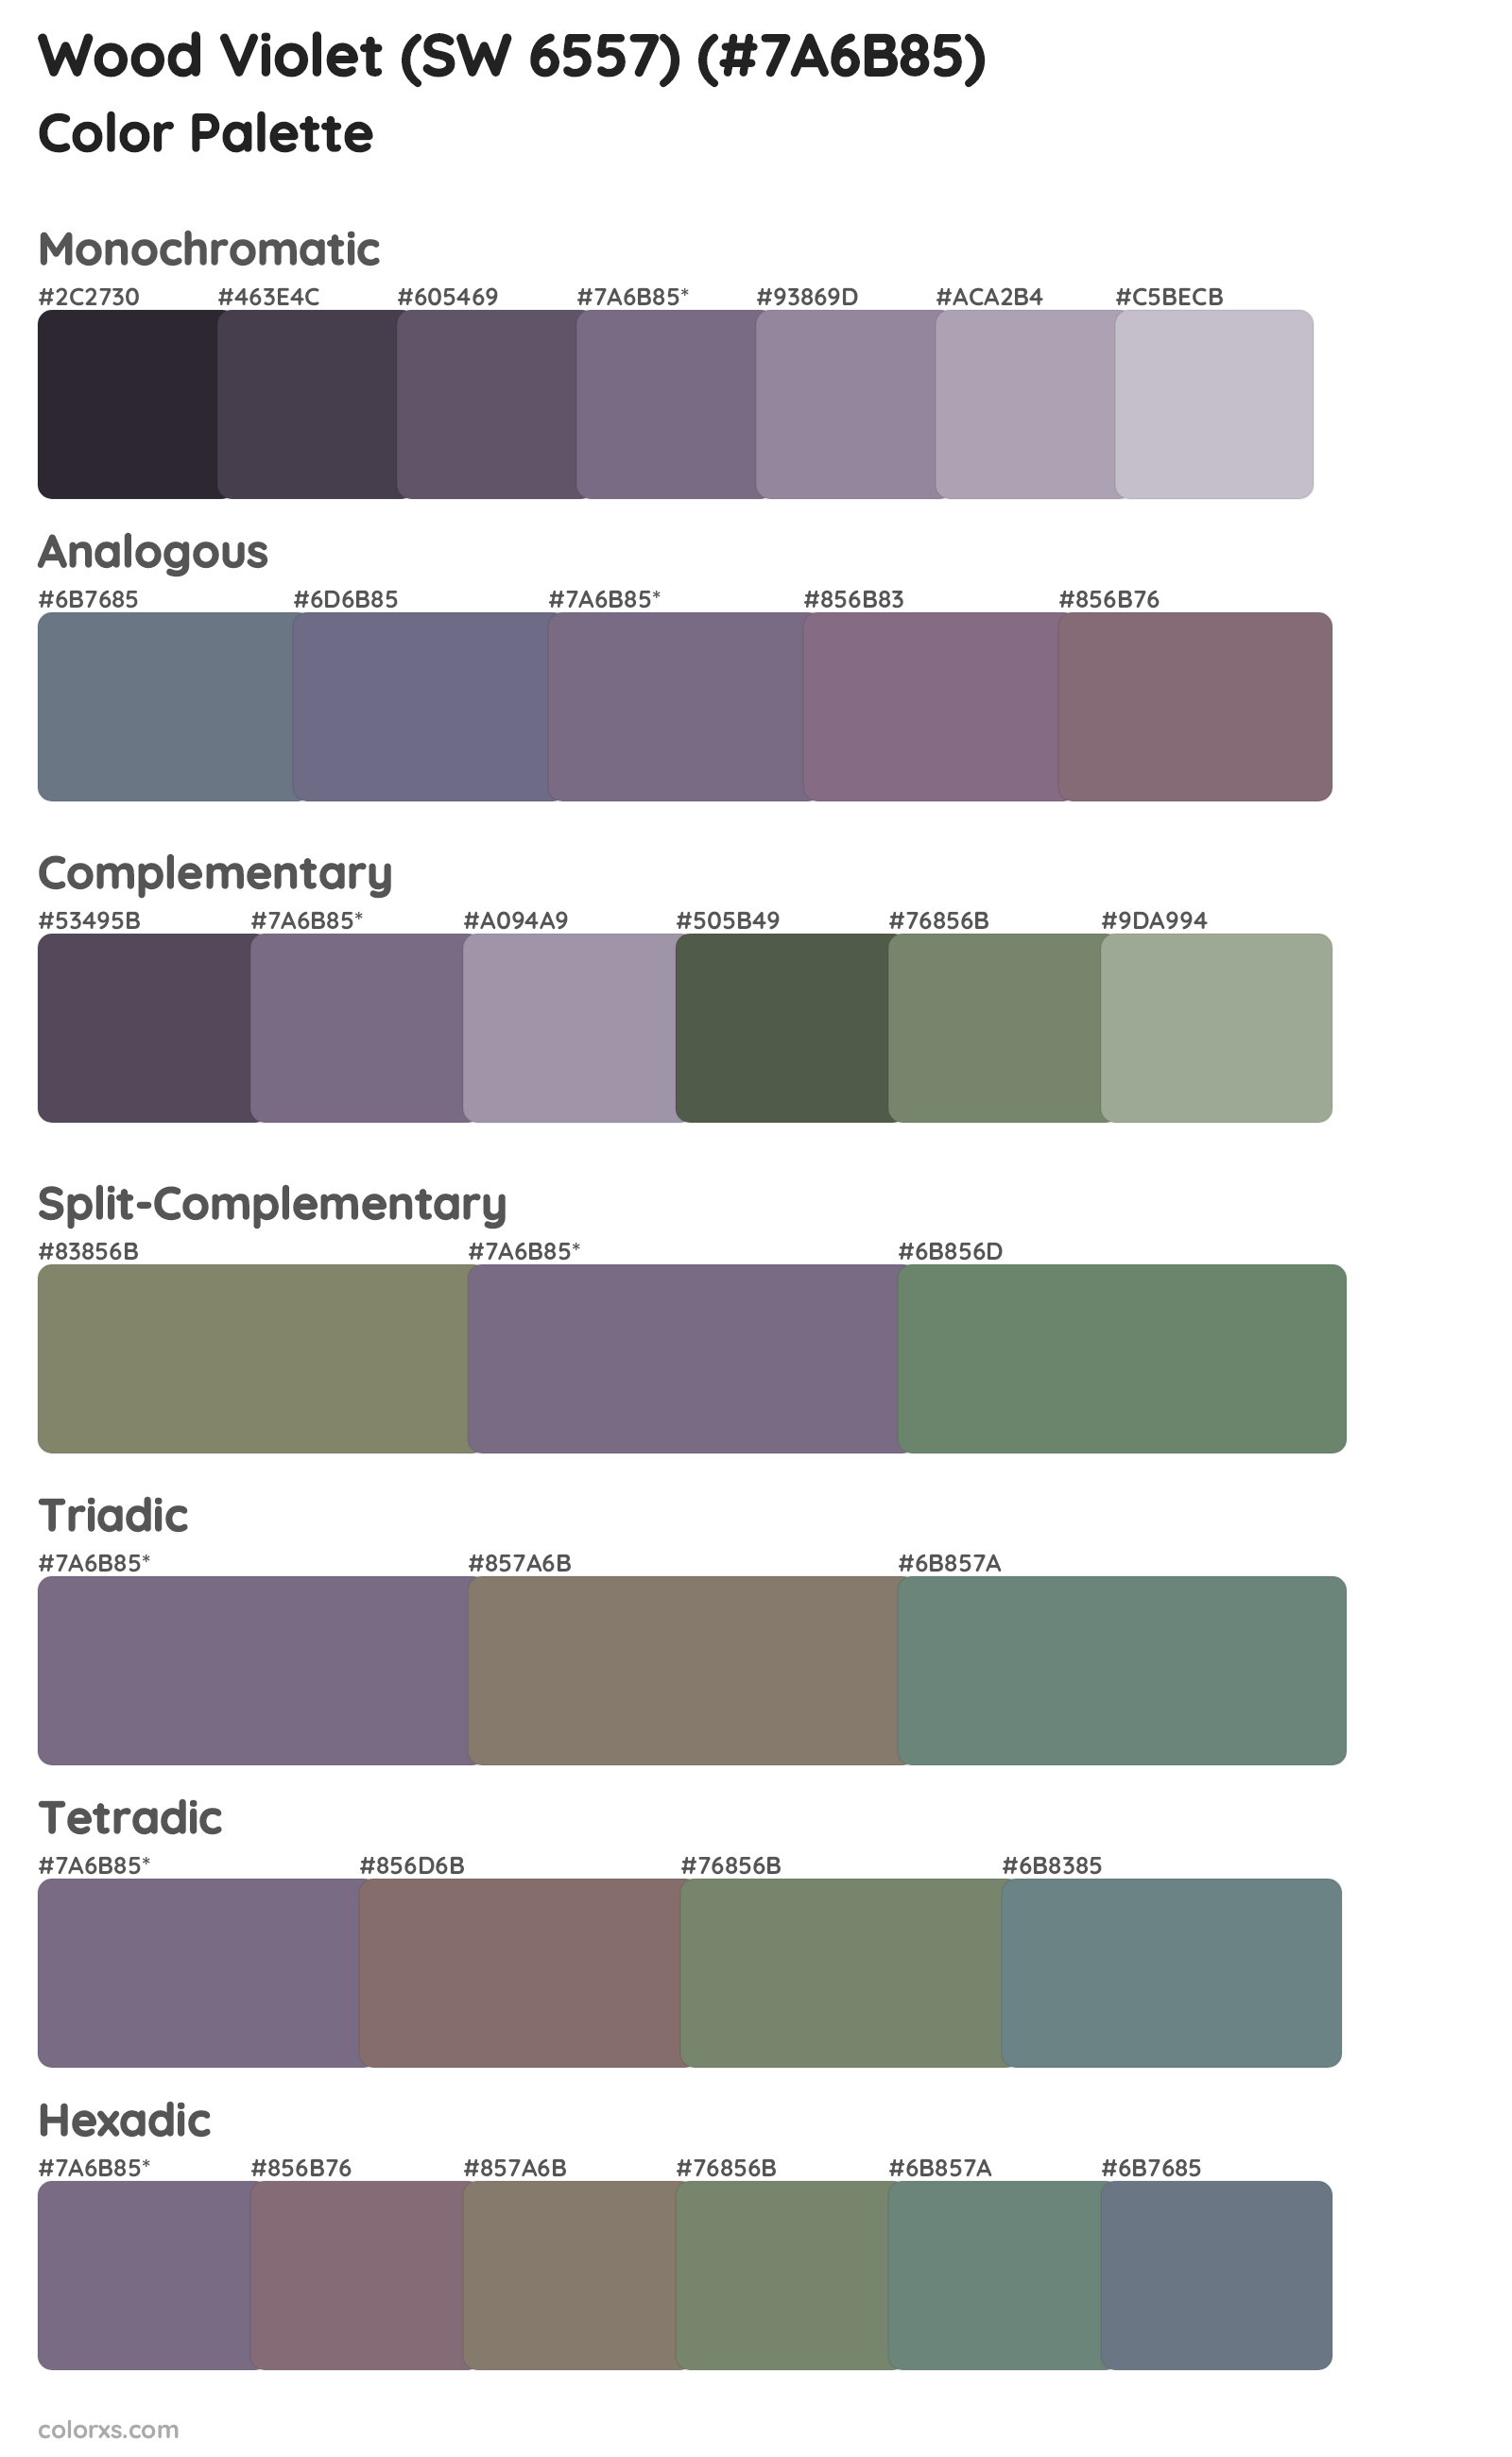 Wood Violet (SW 6557) Color Scheme Palettes